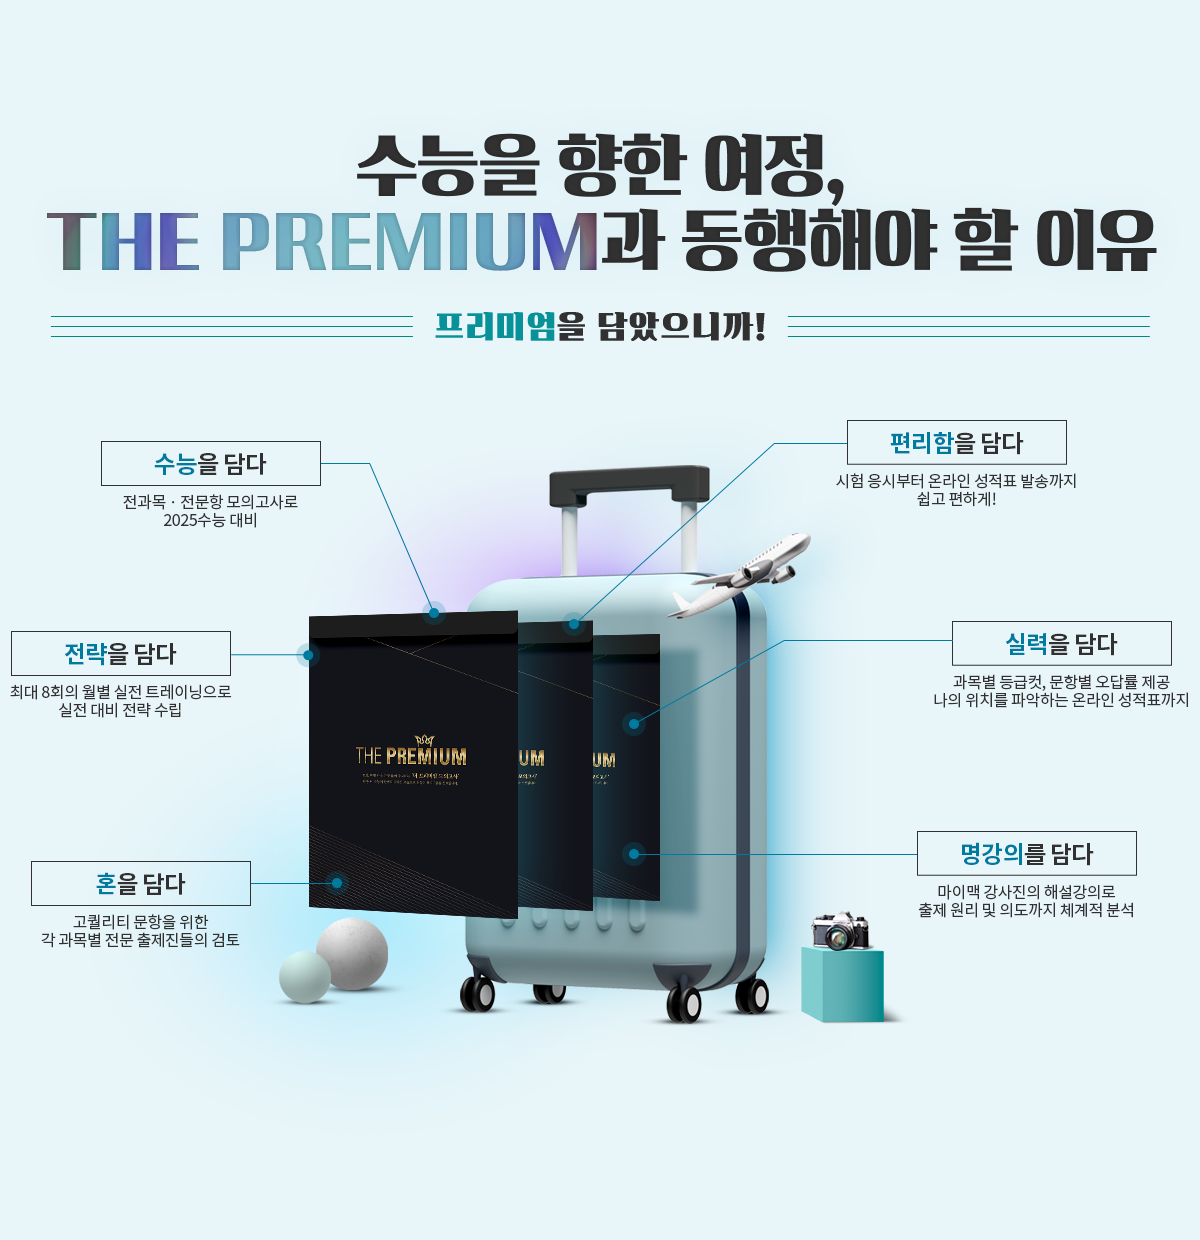 the premium